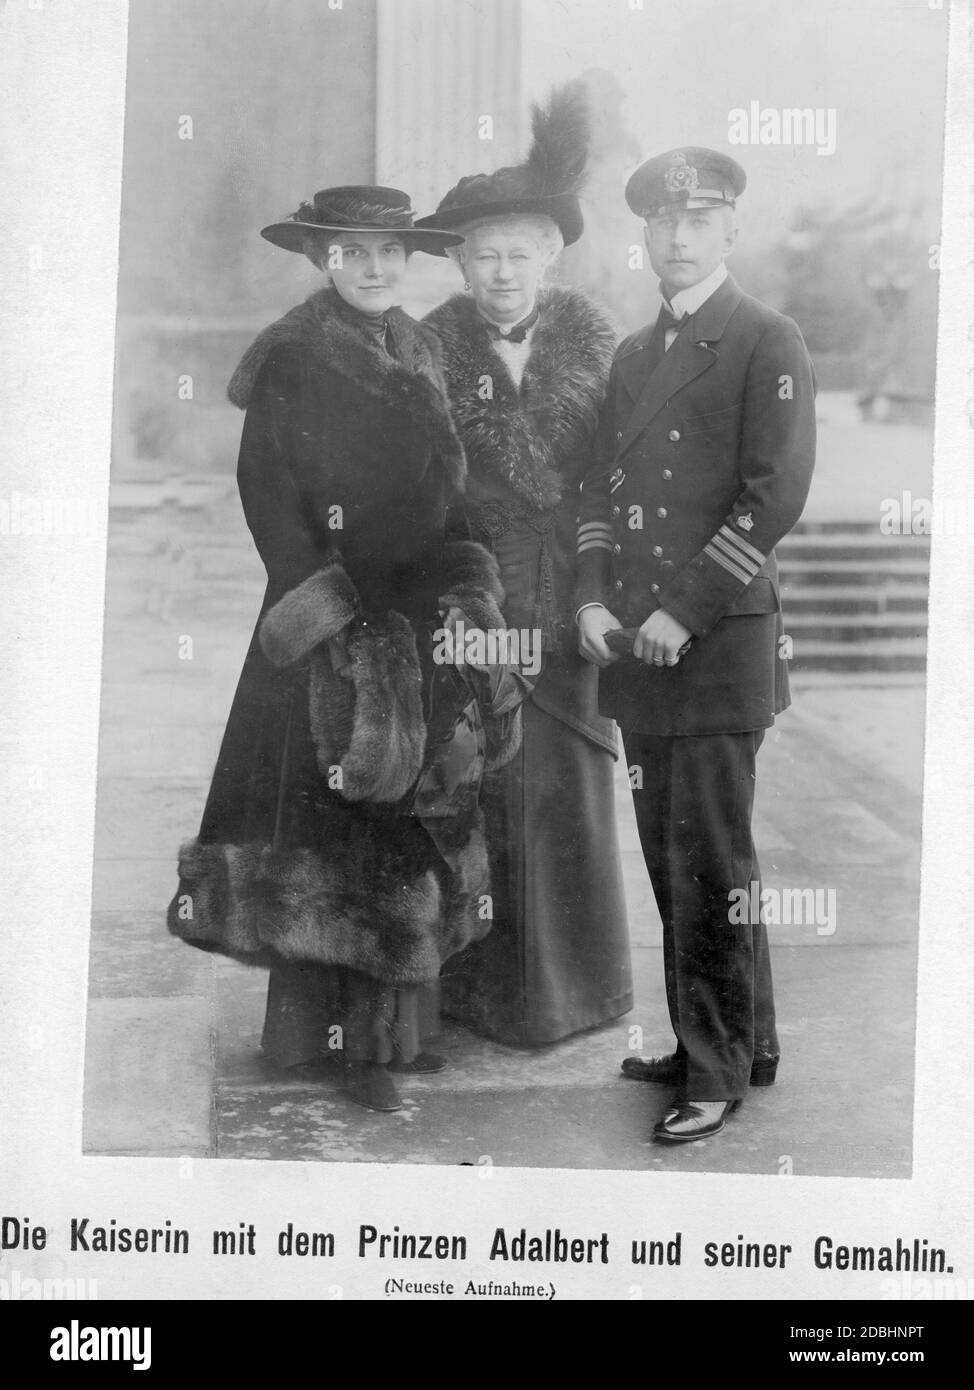 La photo montre l'impératrice Augusta Victoria (au centre) avec son fils Adalbert de Prusse (à droite, dans l'uniforme d'un capitaine de corvette) et son épouse Adelheid de Prusse (à gauche, née von Sachsen-Meiningen). Photo non datée, prise vers 1916. Banque D'Images